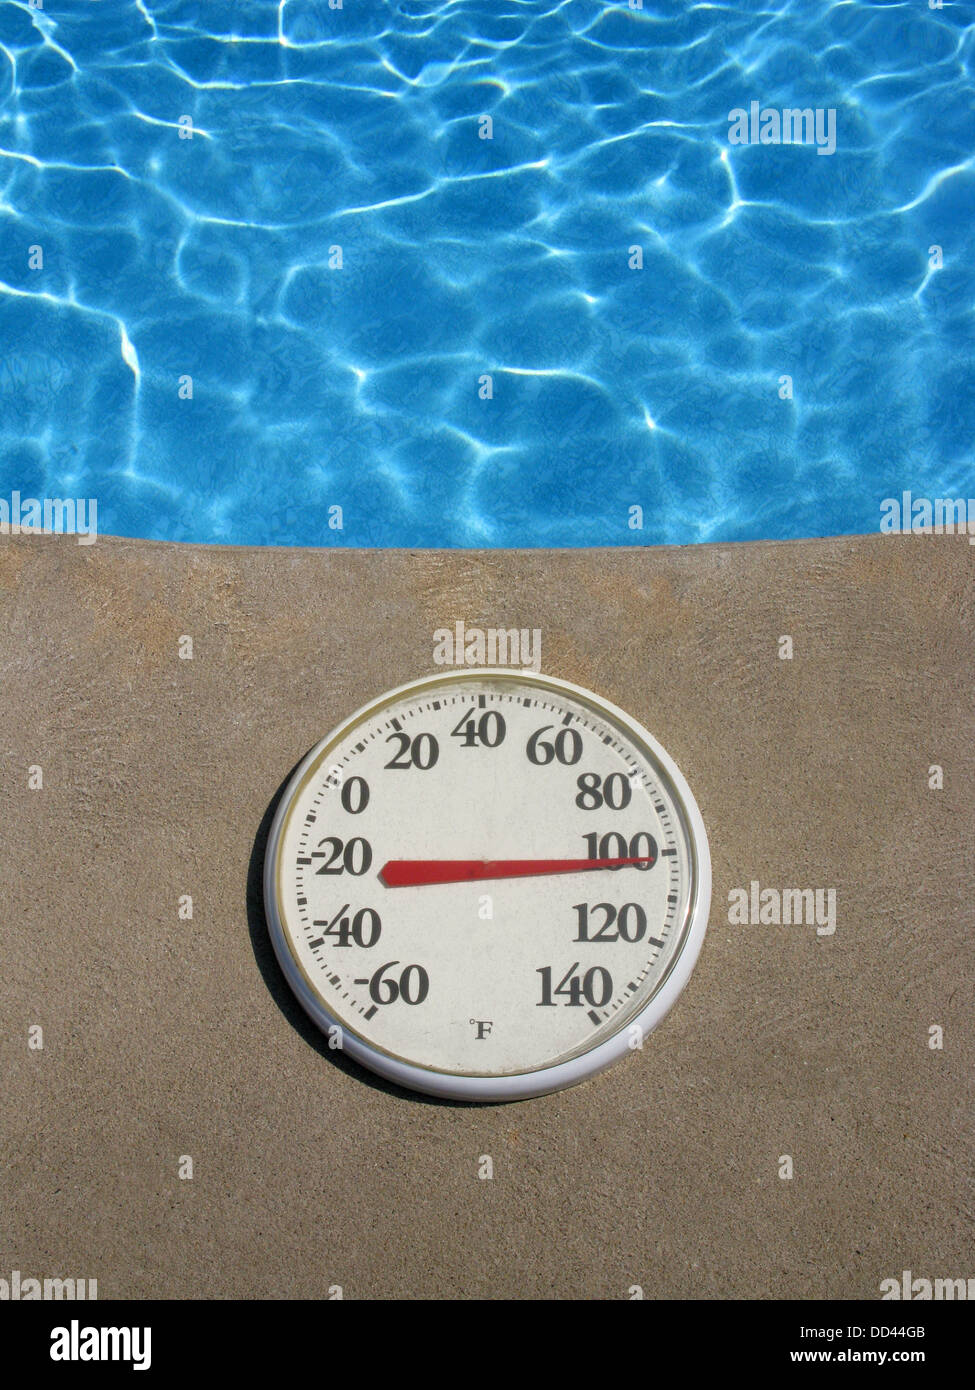 Un round termometro in plastica che mostra la temperatura calda. Oggetto è vicino a una piscina di acqua blu Foto Stock